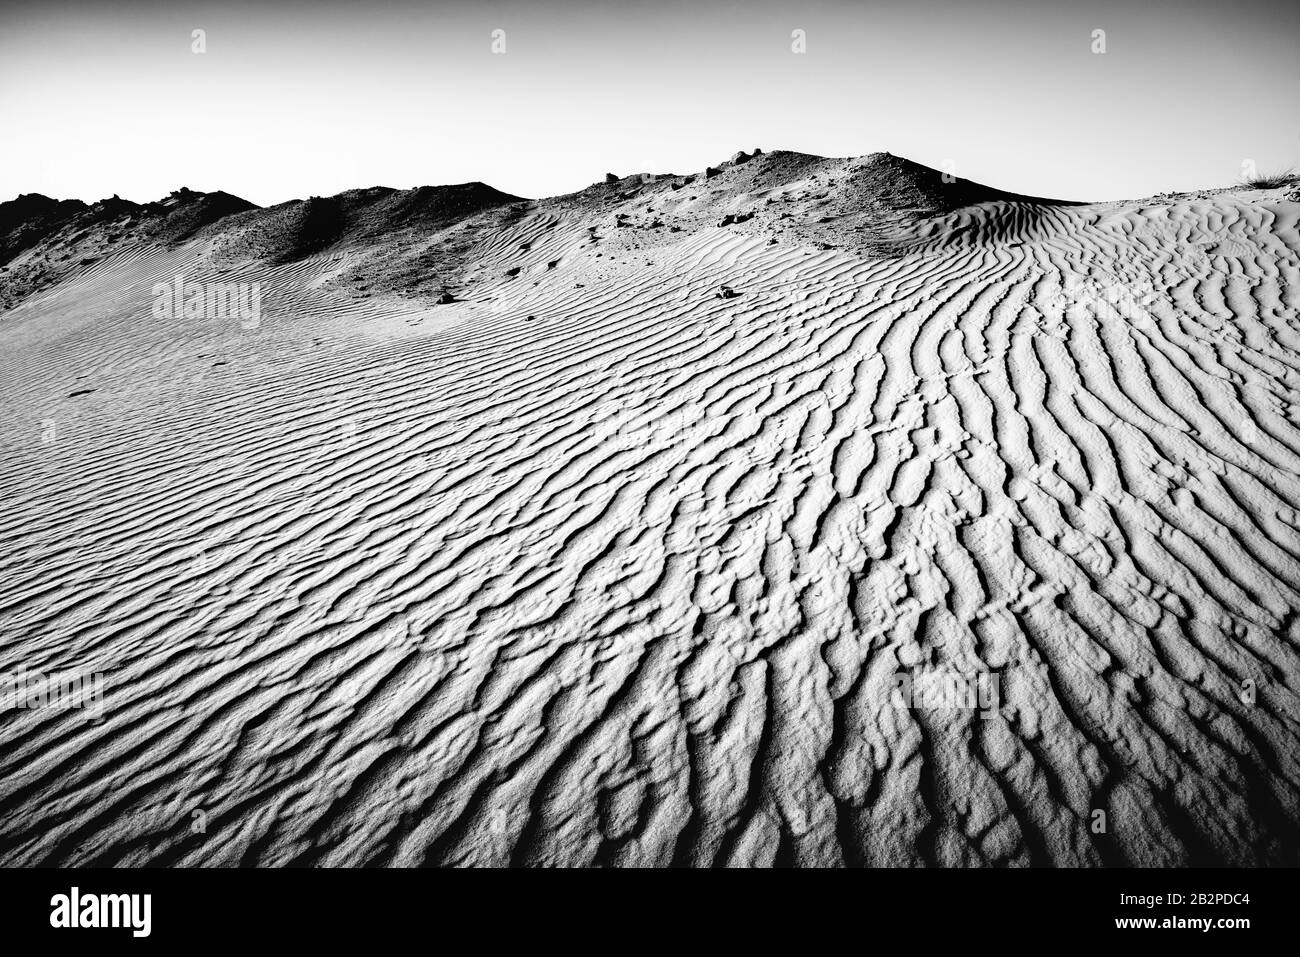 immagine in bianco e nero presa al crepuscolo, vista astratta di increspature di sabbia attraverso il deserto, Foto Stock